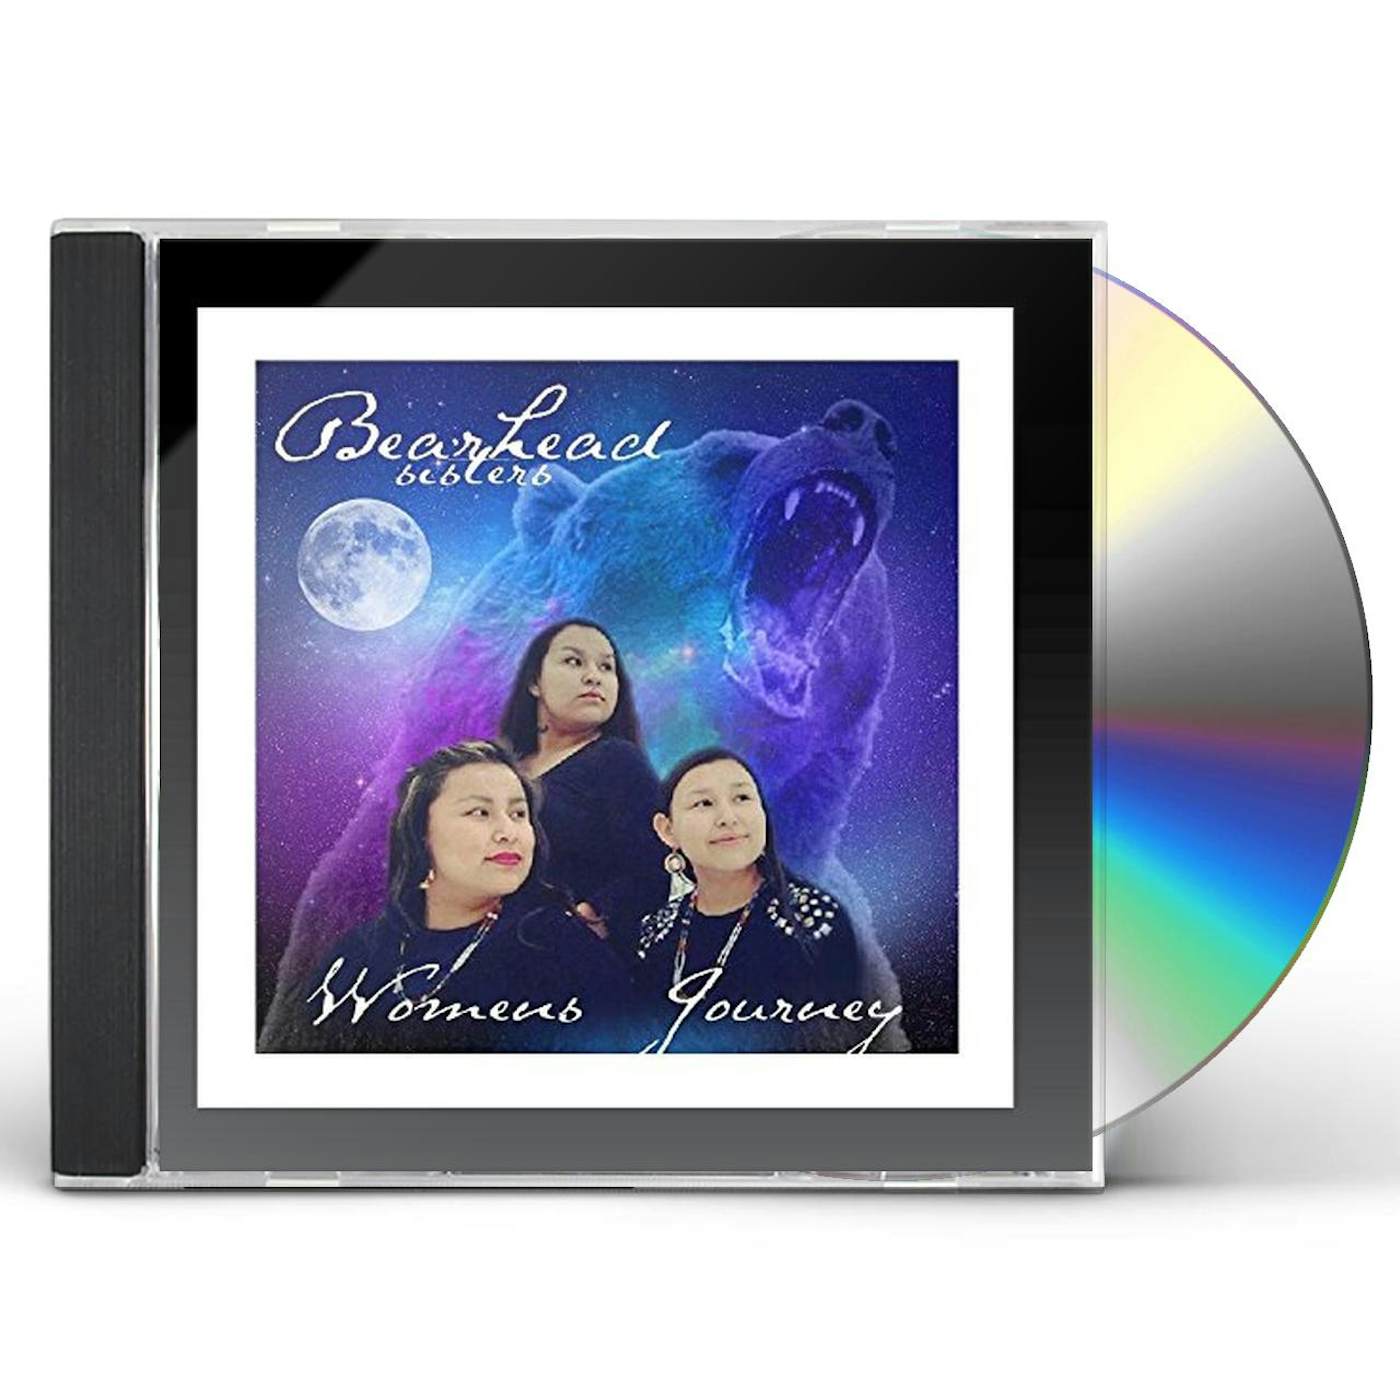 Bearhead Sisters WOMEN'S JOURNEY CD